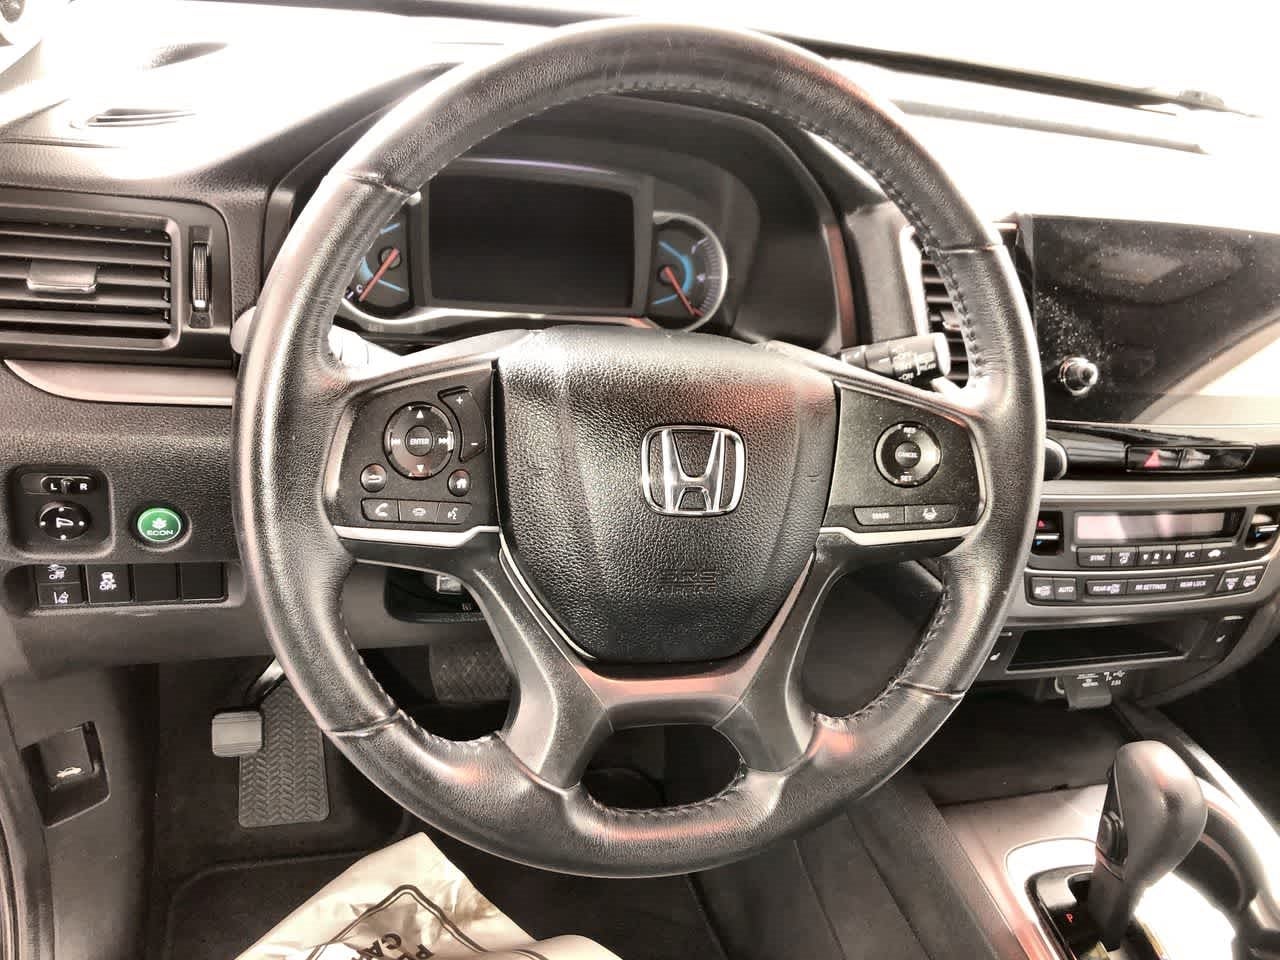 2020 Honda Pilot EX-L